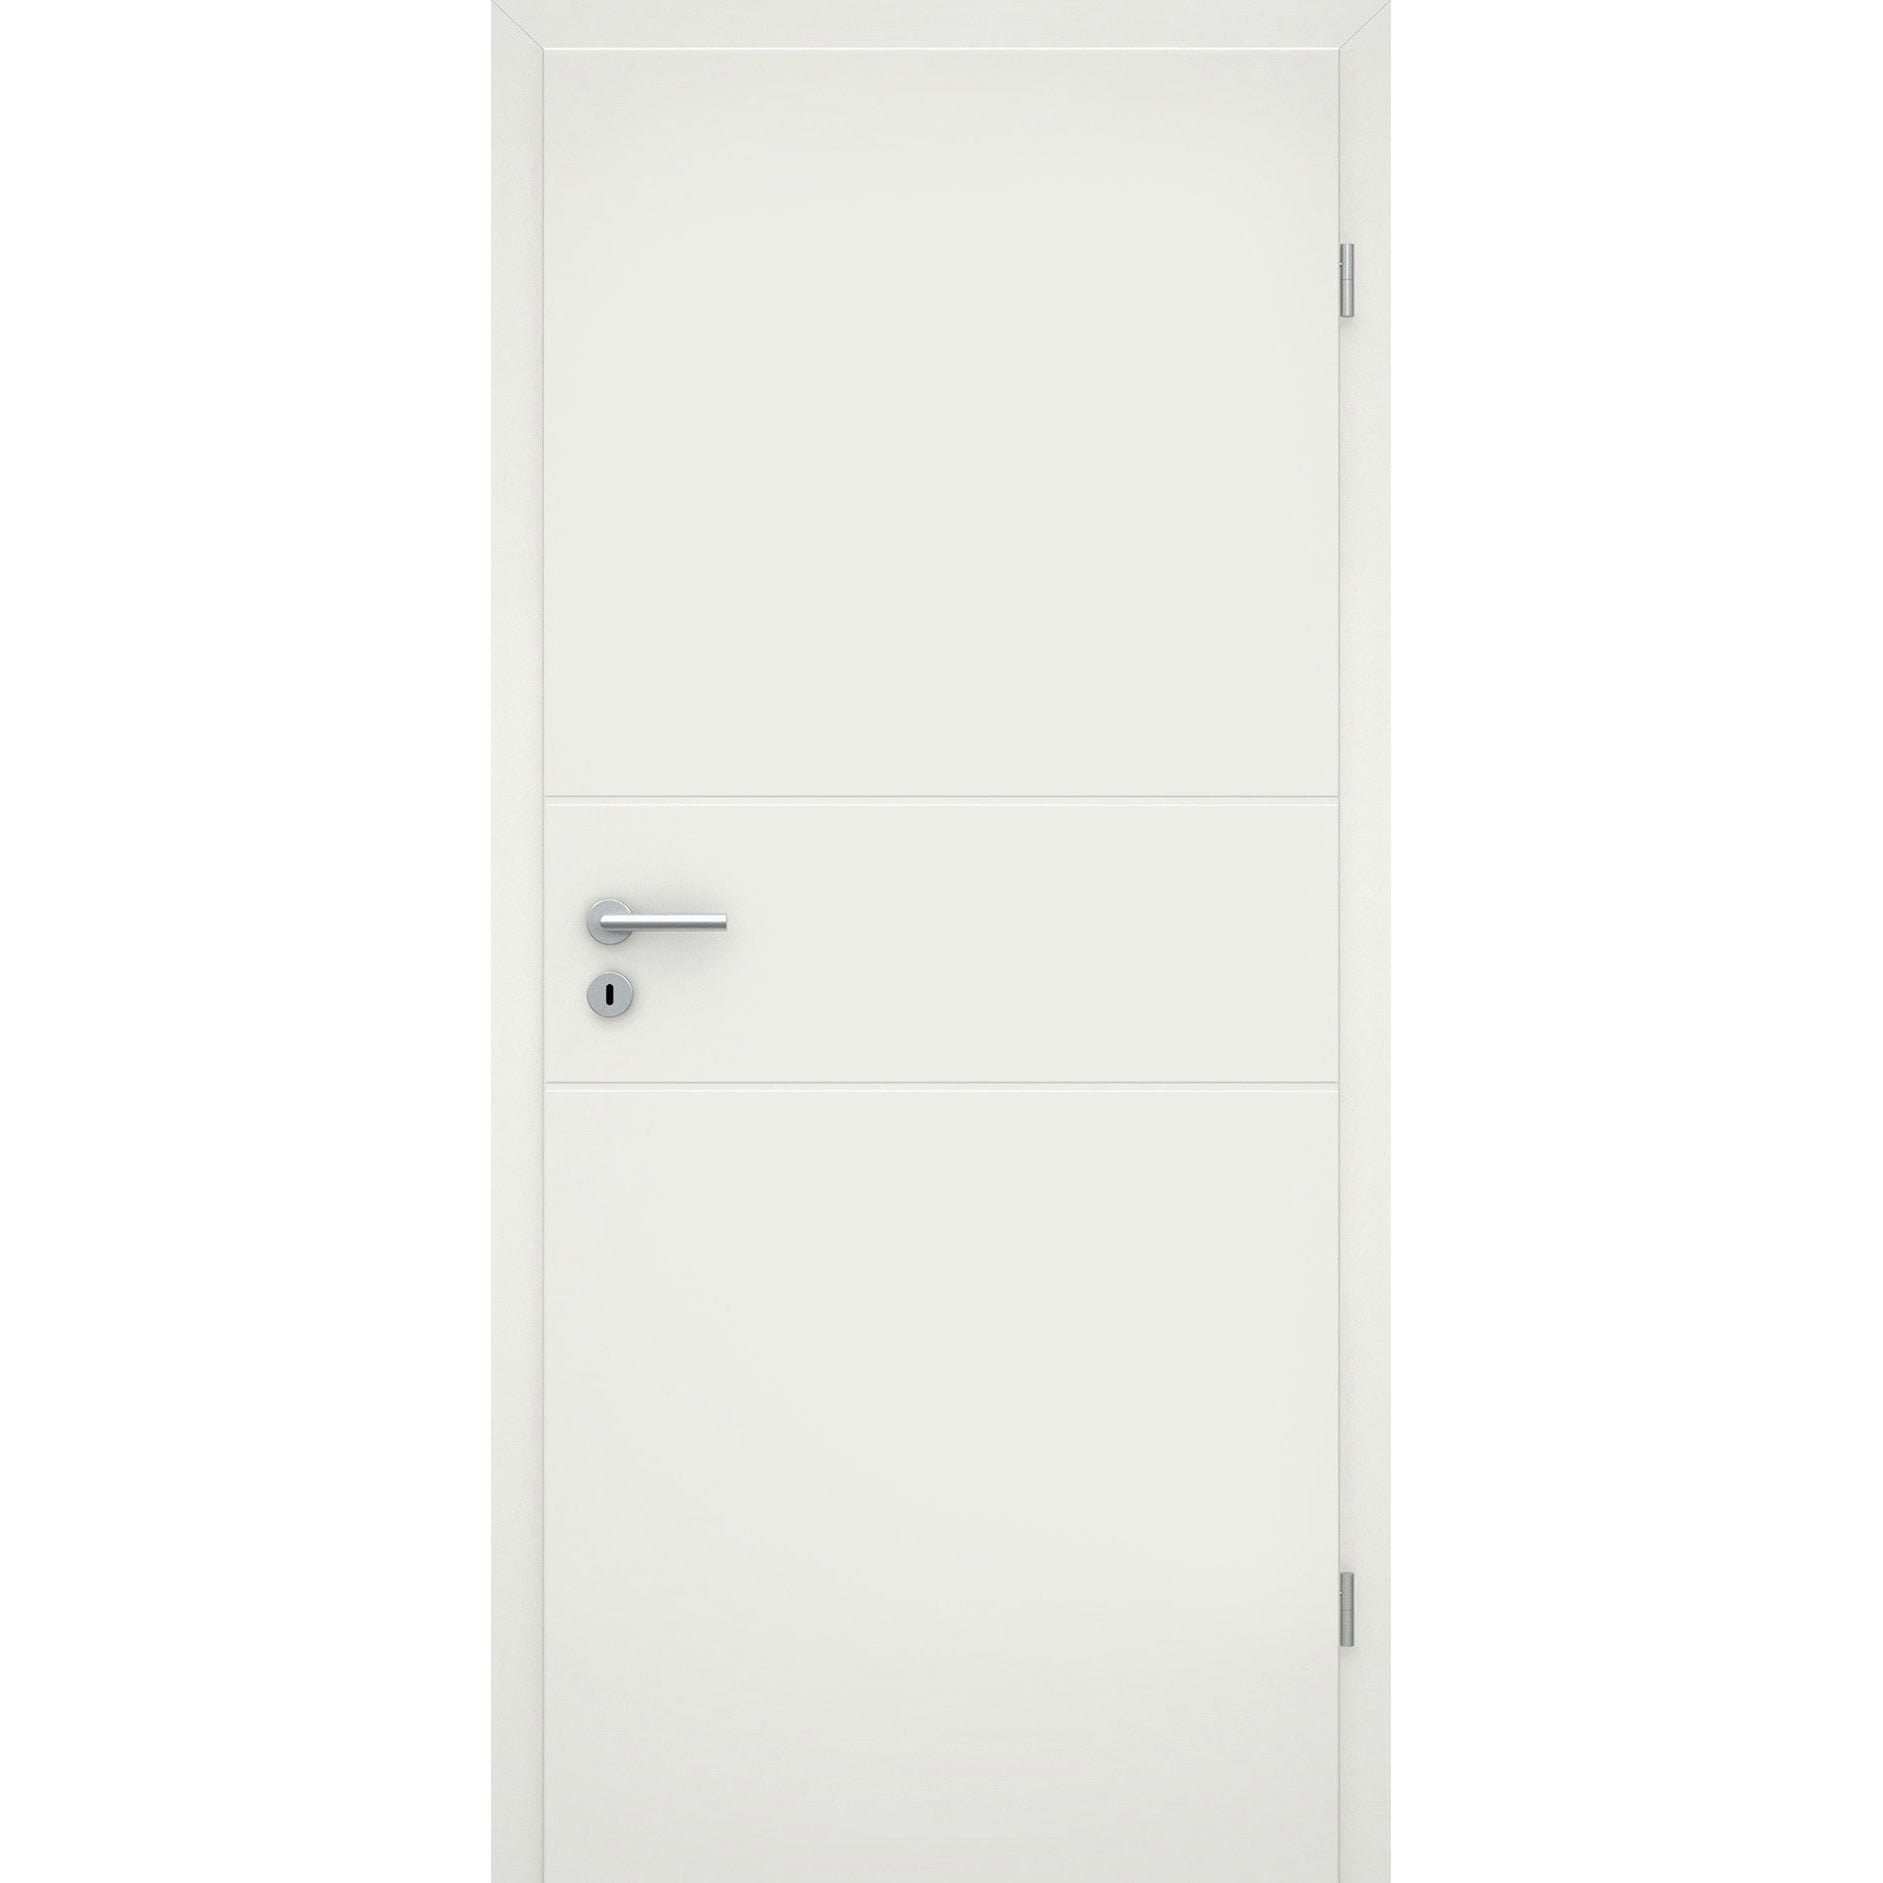 Zimmertür mit Zarge soft-weiß 2 Rillen Eckkante - Modell Designtür Q21